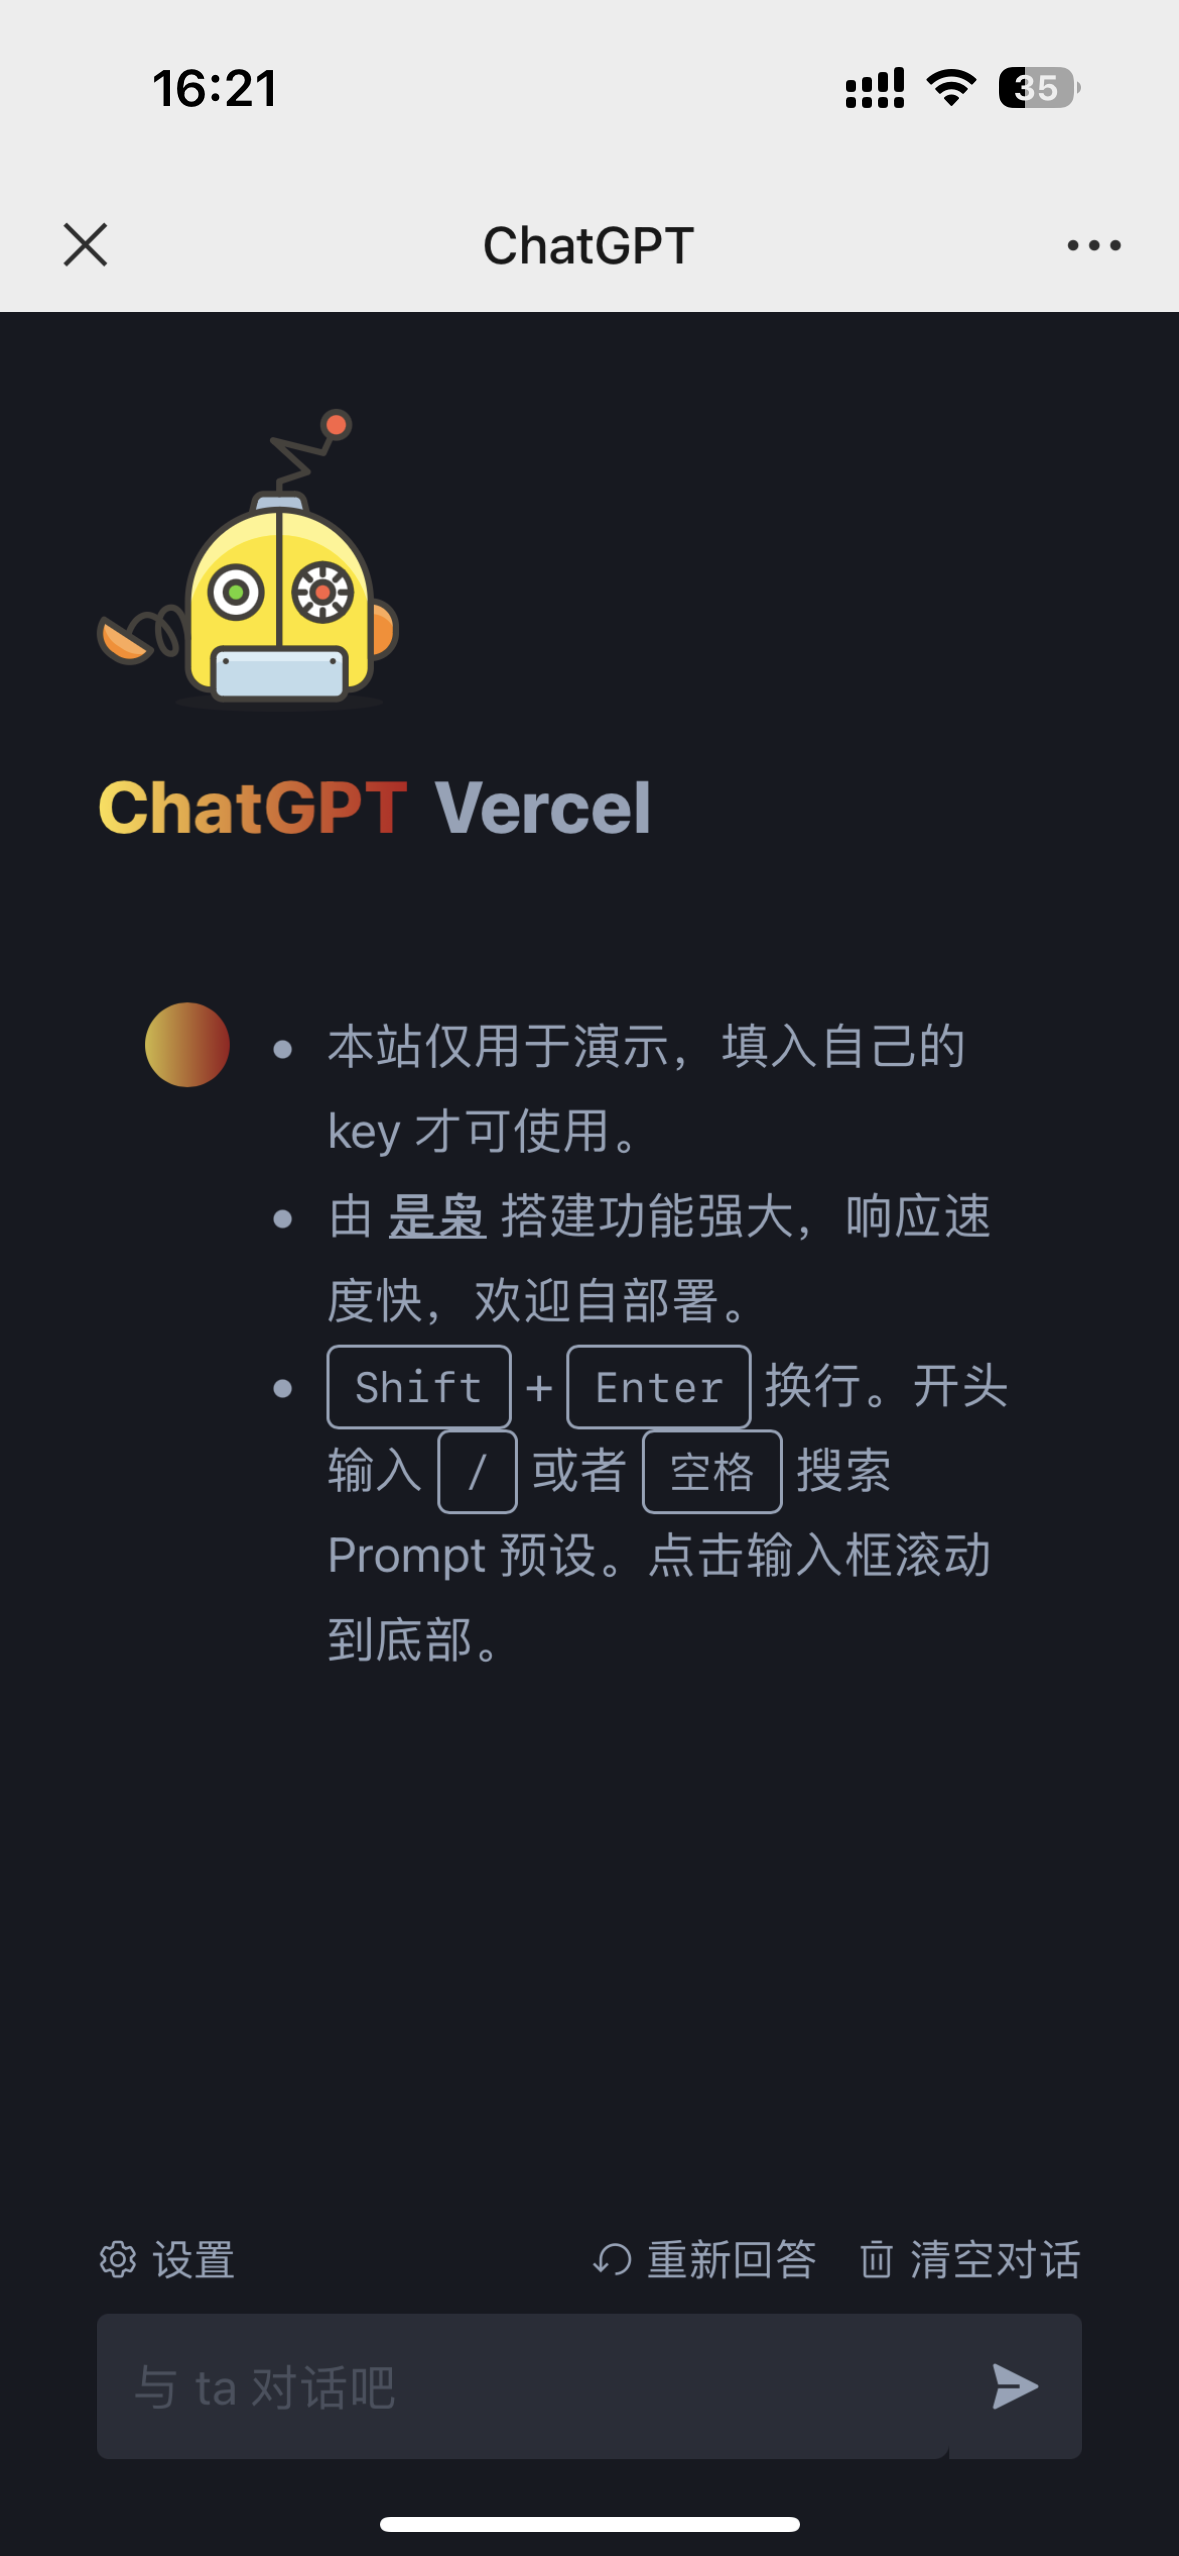 （无需服务器）使用Vercel平台搭建ChatGPT 3.5